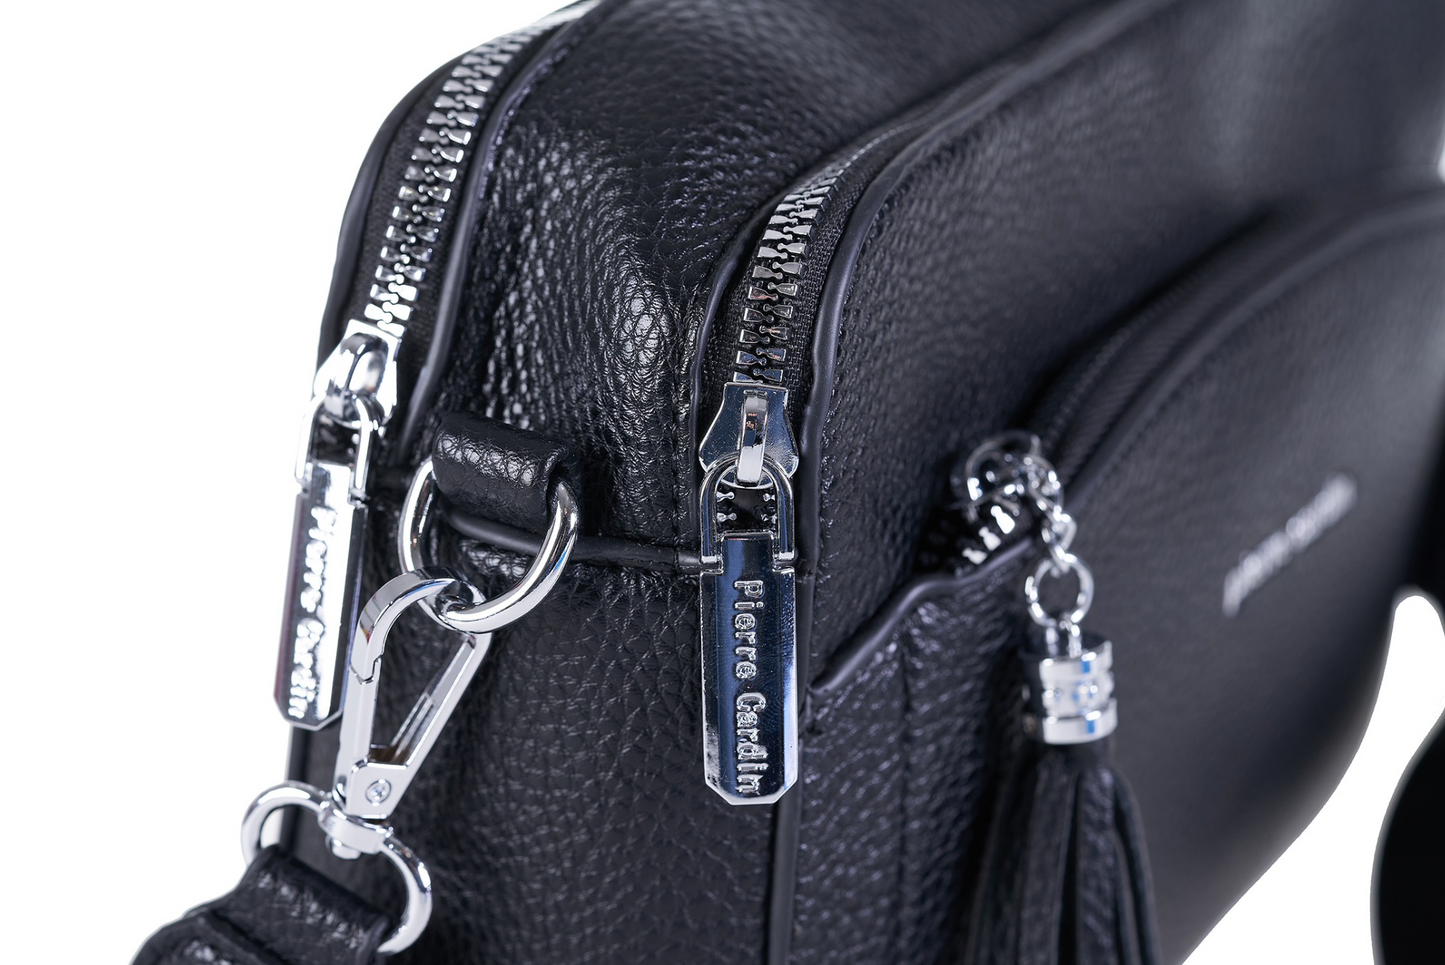 Pierre Cardin jeans handbag for women